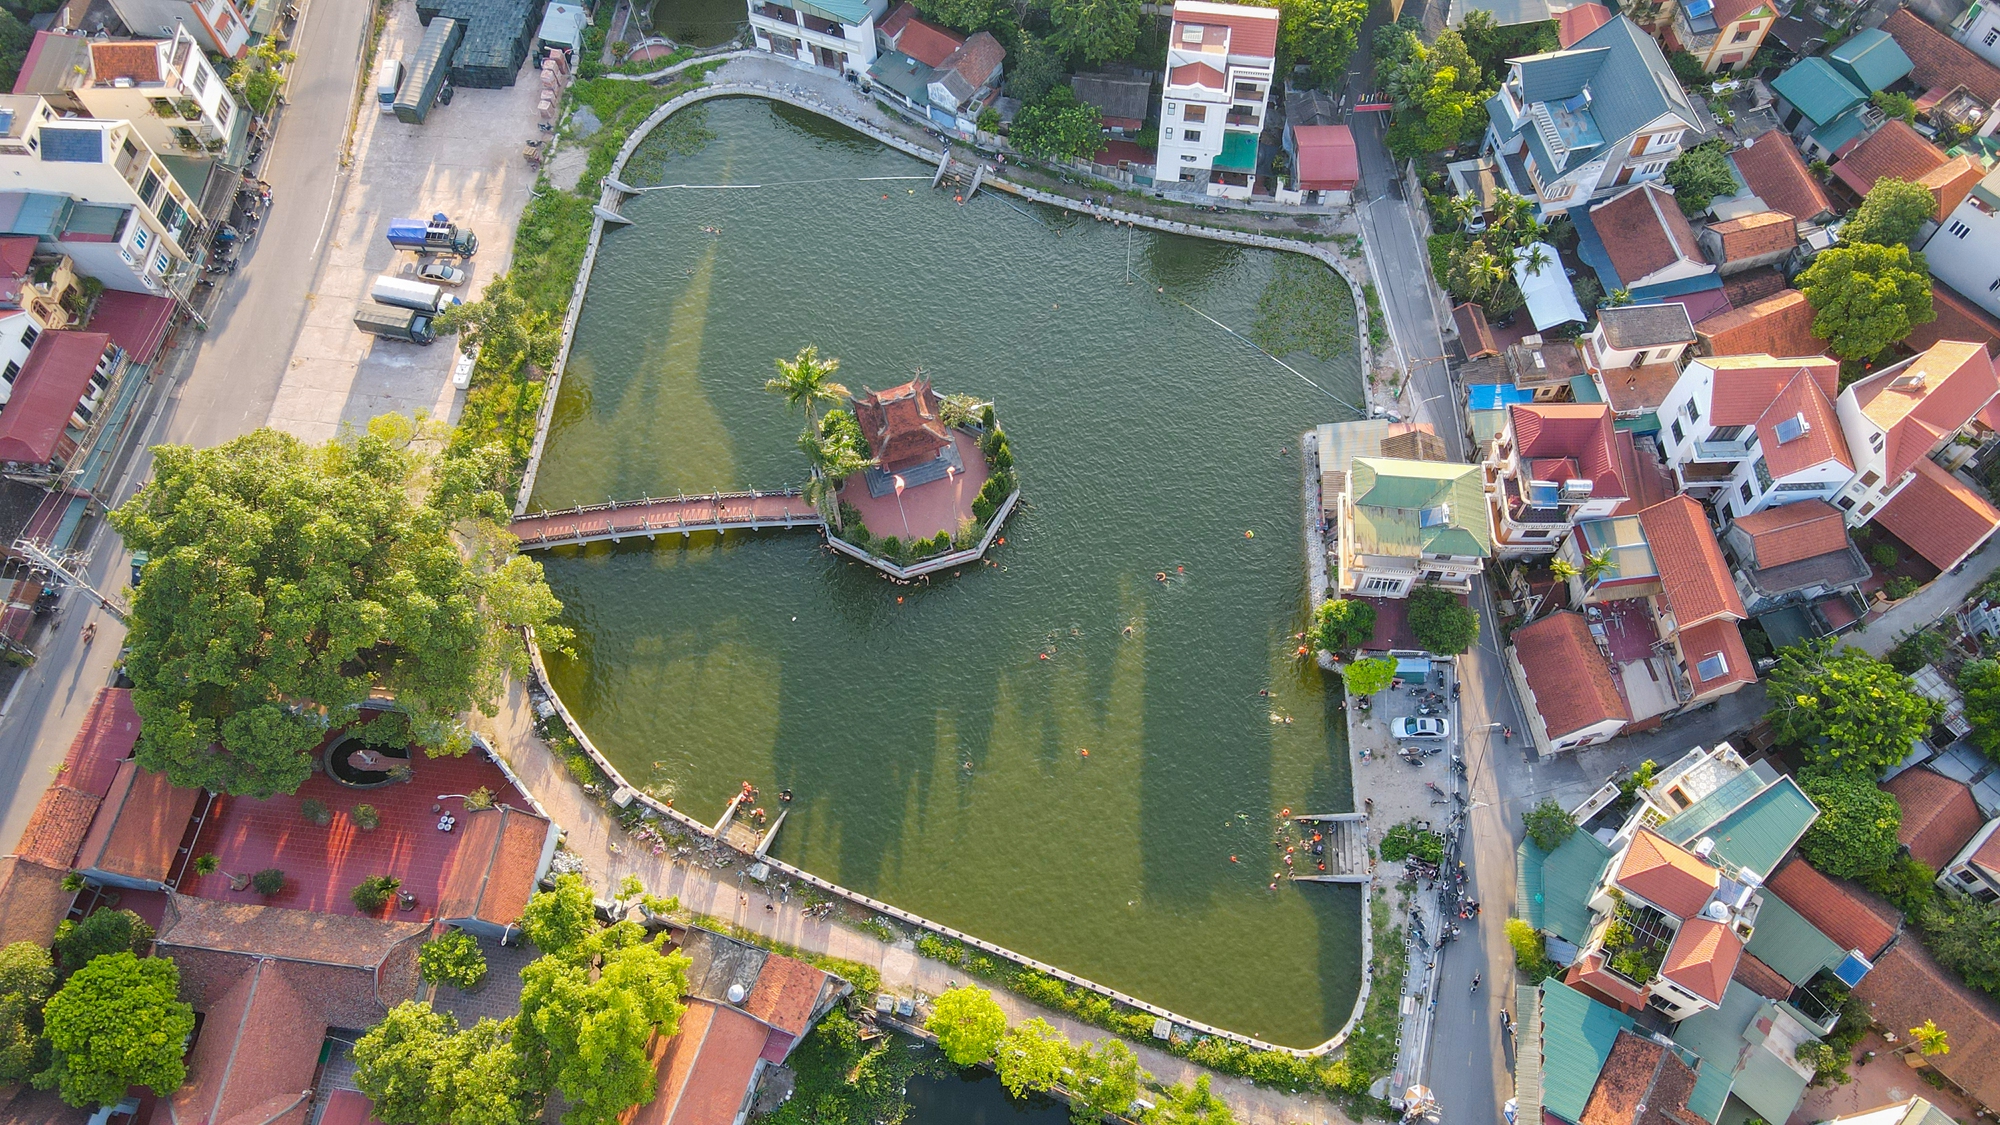  Hà Nội: Ao làng rộng 7.000 m2 được hô biến thành bể bơi, hàng trăm người nô nức tới chơi - Ảnh 1.